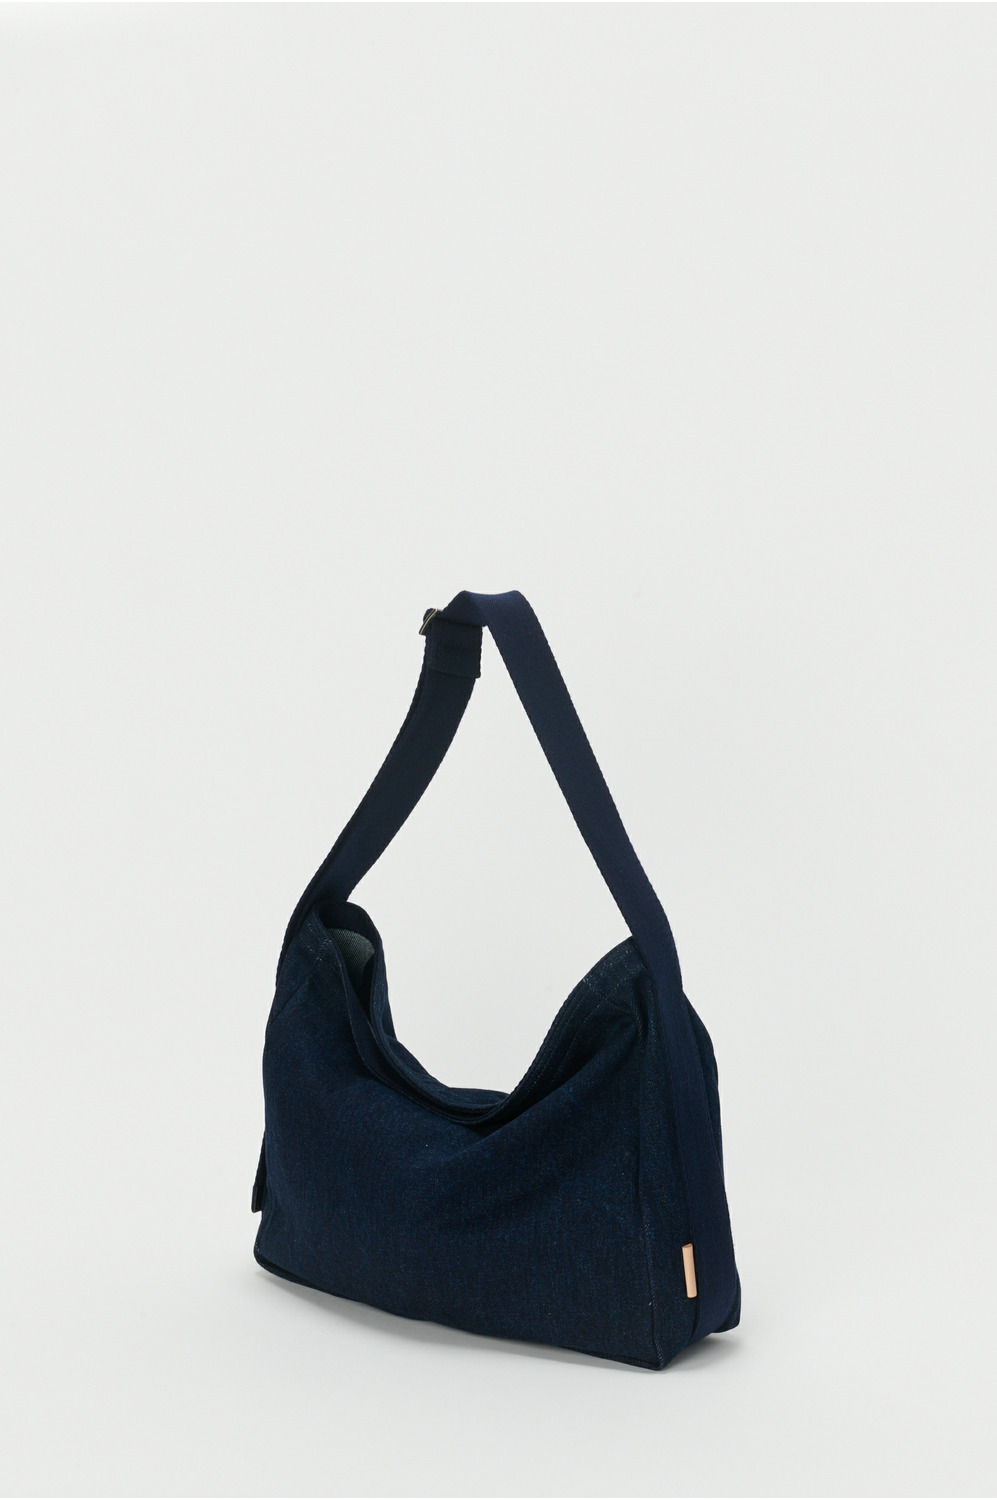 square shoulder bag small 詳細画像 indigo one wash 2